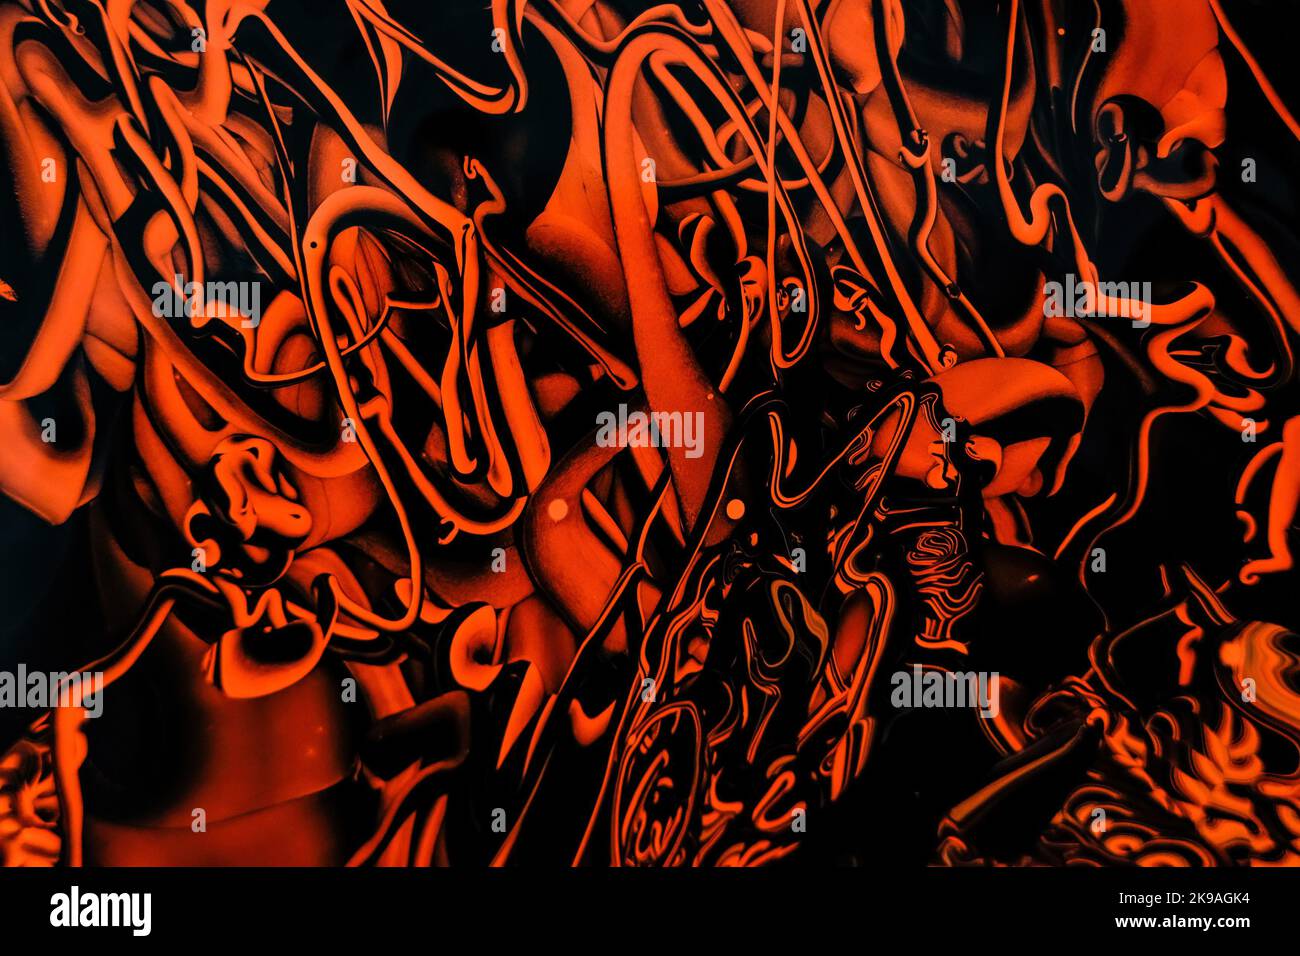 Photo de peinture liquide orange et noire avec réflexions. Arrière-plan abstrait avec effet de peinture tourbillonnant. Œuvres d'art en acrylique liquide avec mélange coloré Banque D'Images